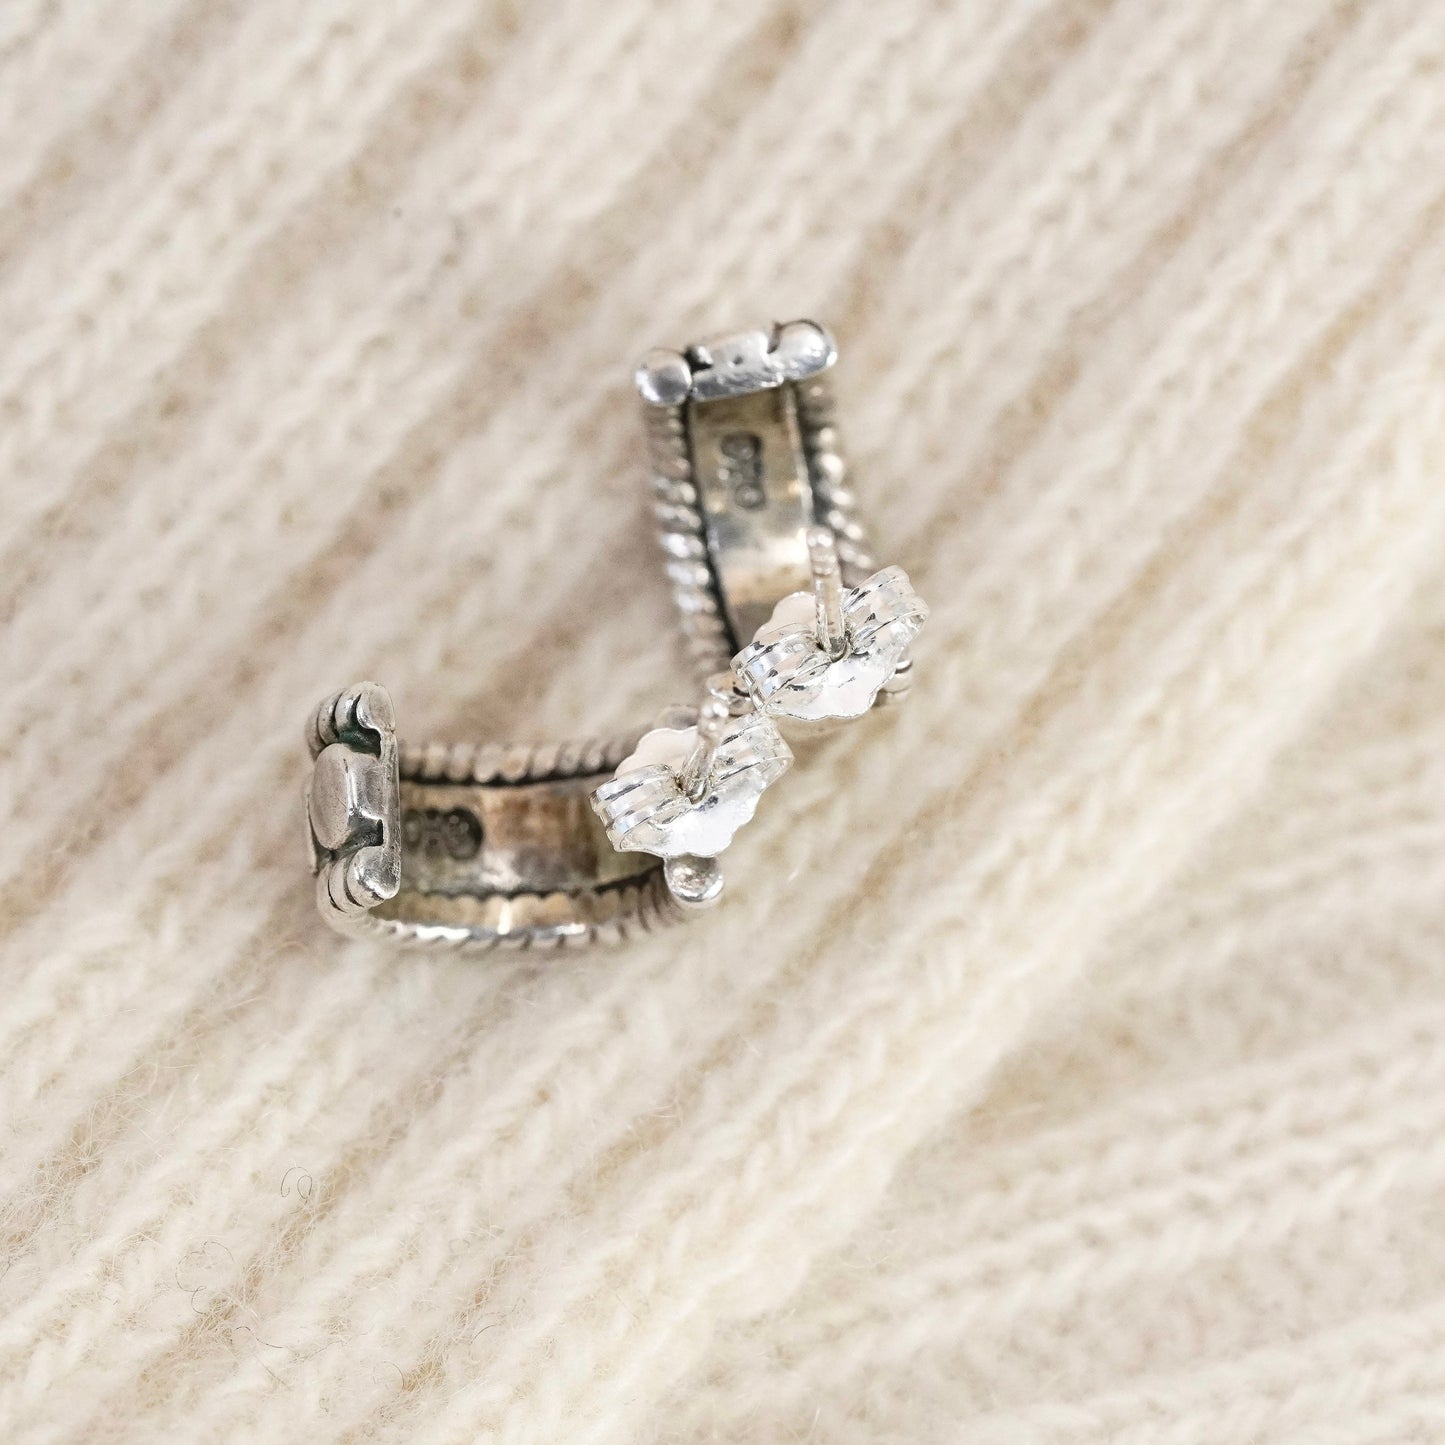 0.5”, Vintage Sterling silver handmade earrings, 925 Huggie hoops with beads